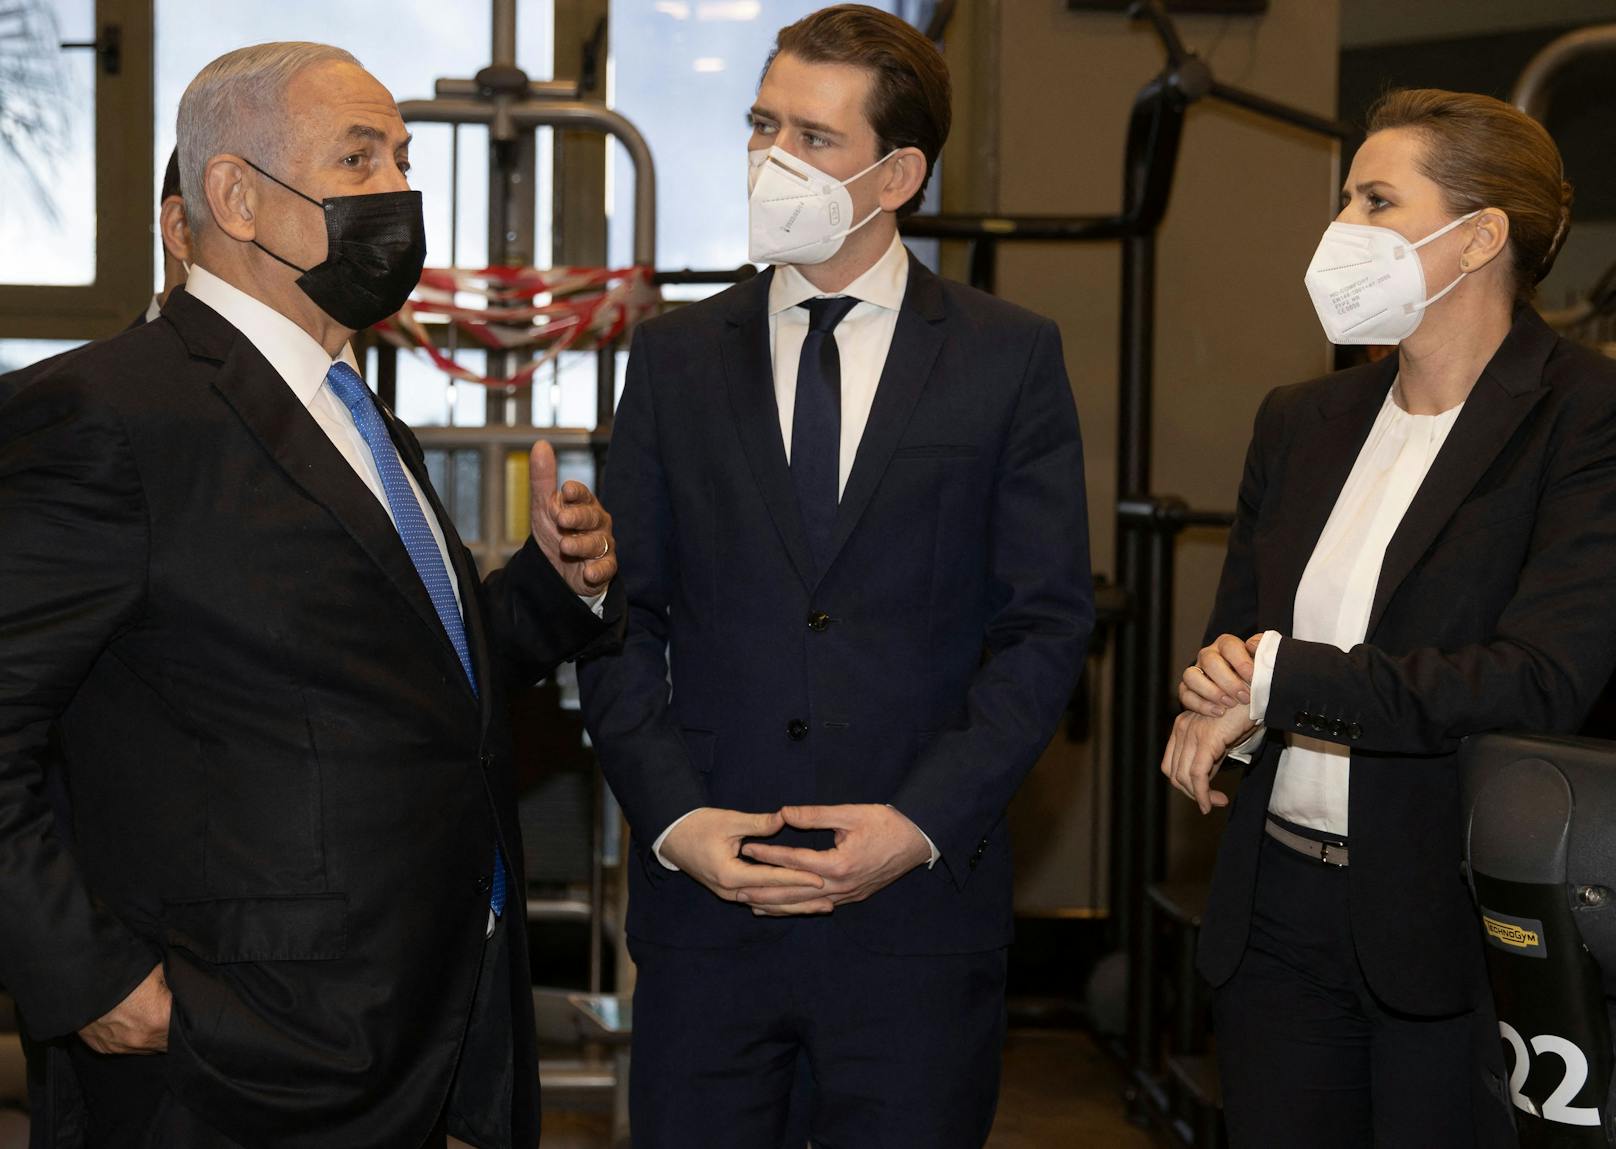 Bundeskanzler Sebastian Kurz (ÖVP) und seine dänische Amtskollegin Mette Frederiksen bei ihrer Ankunft am 4. März 2021 in Jerusalem im Rahmen einer eintägigen Visite mit Premier Benjamin Netanjahu.